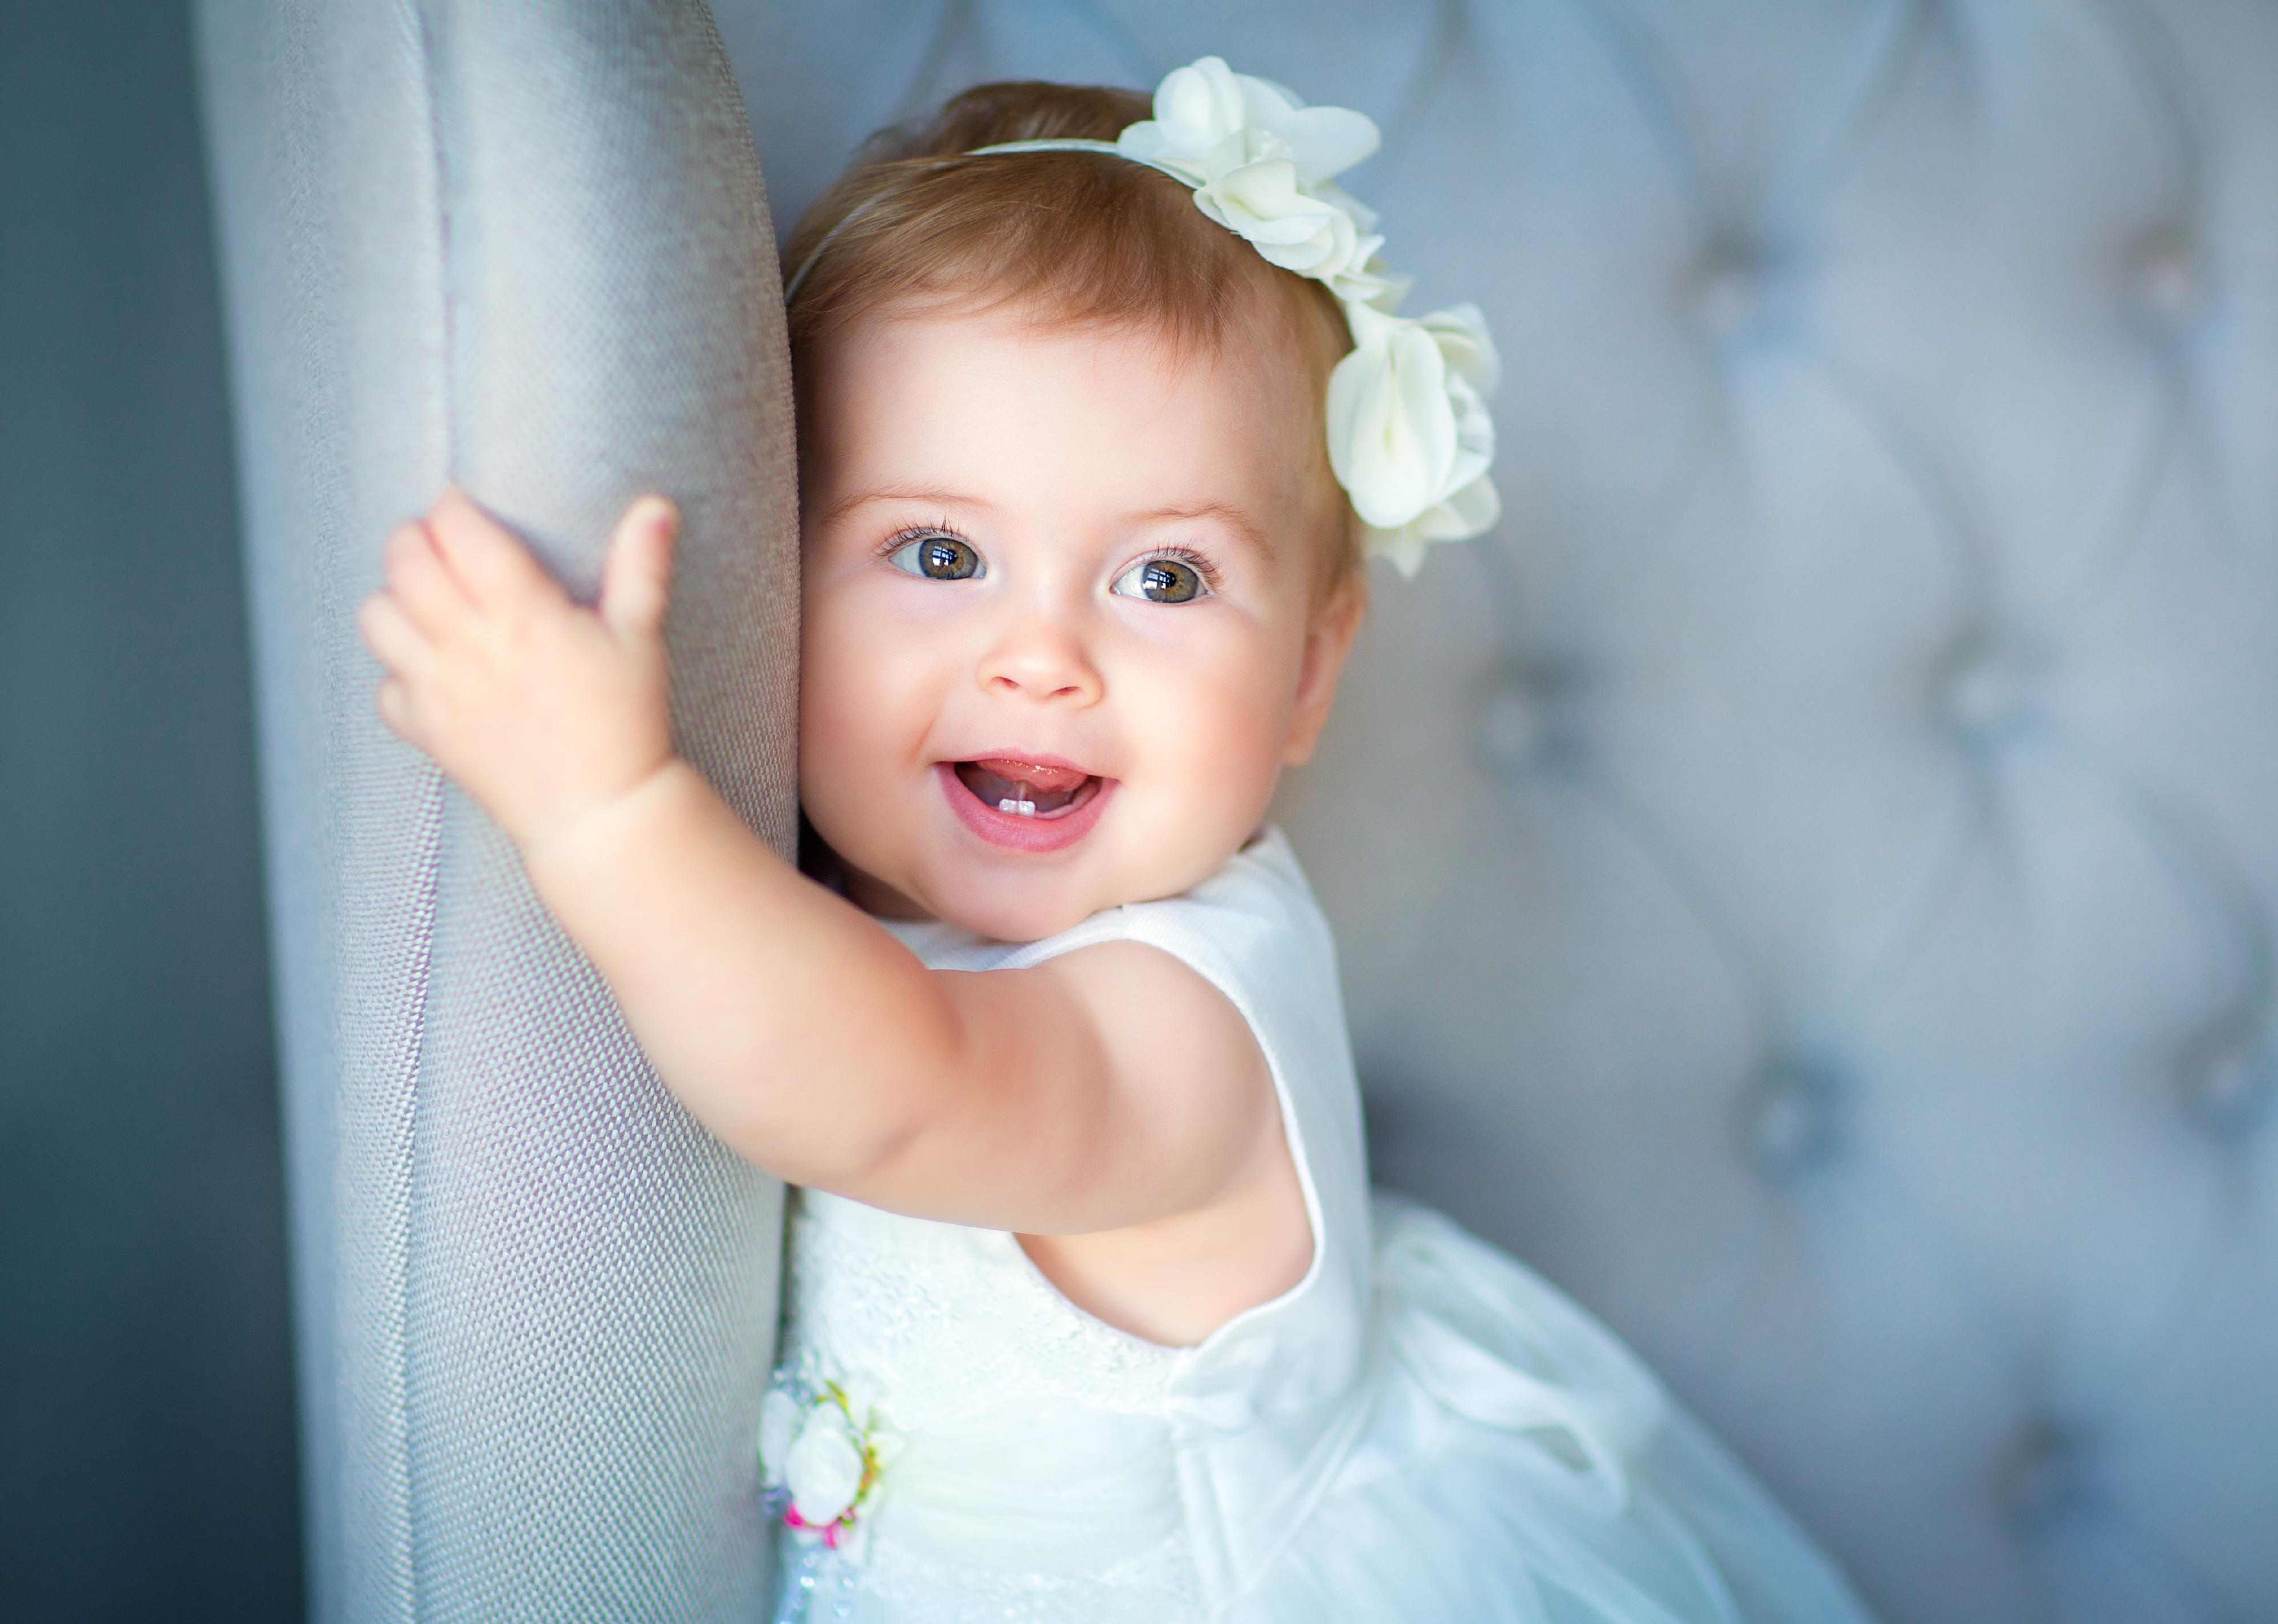 Baby girl wearing white dress and headband.